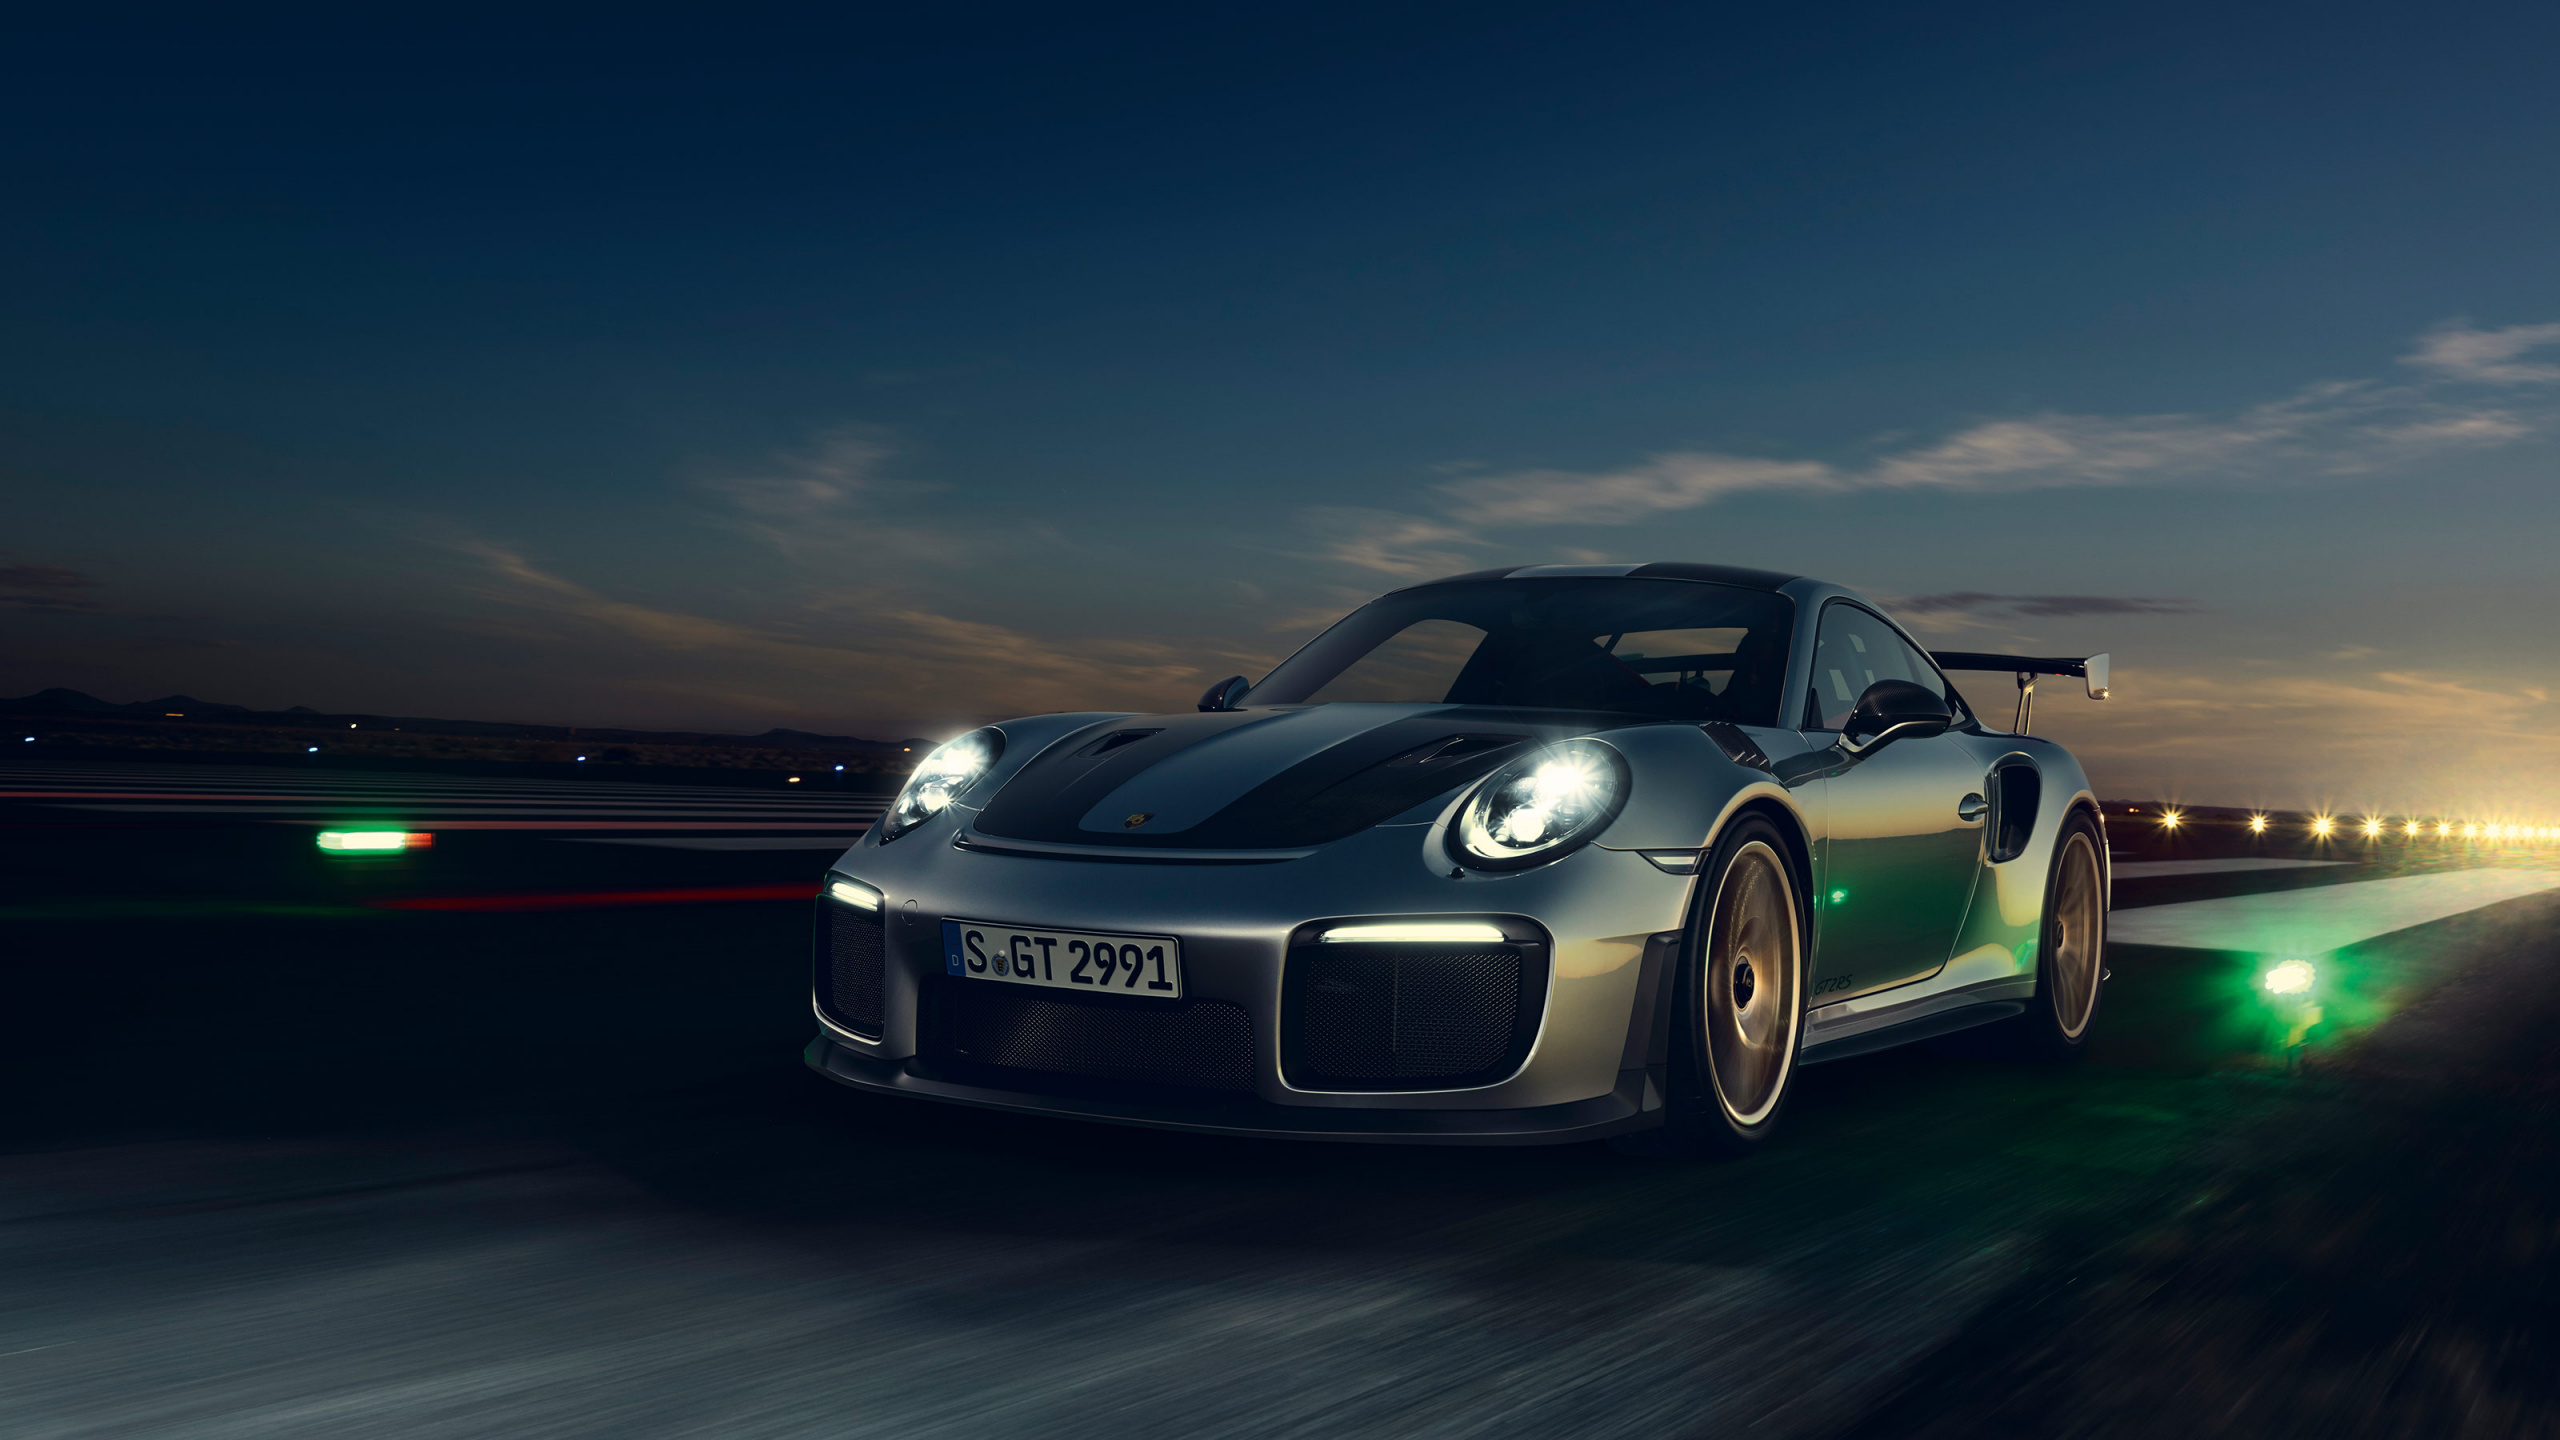 Schwarzer Porsche 911 Unterwegs in Der Nacht. Wallpaper in 2560x1440 Resolution